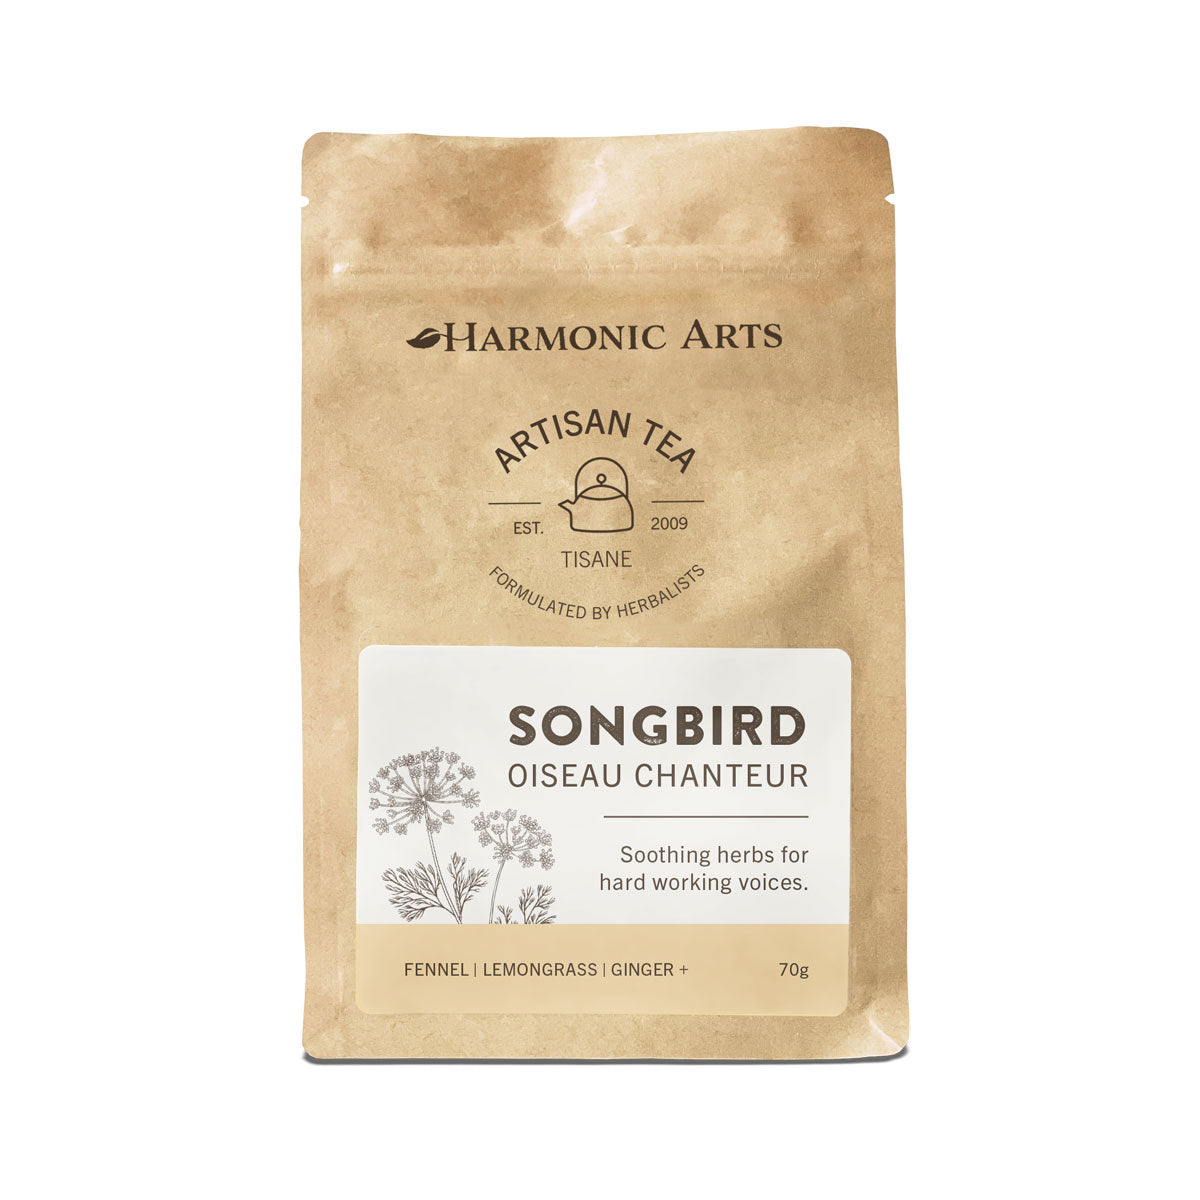 Harmonic Arts Artisan Tea - Songbird (70g) - Lifestyle Markets